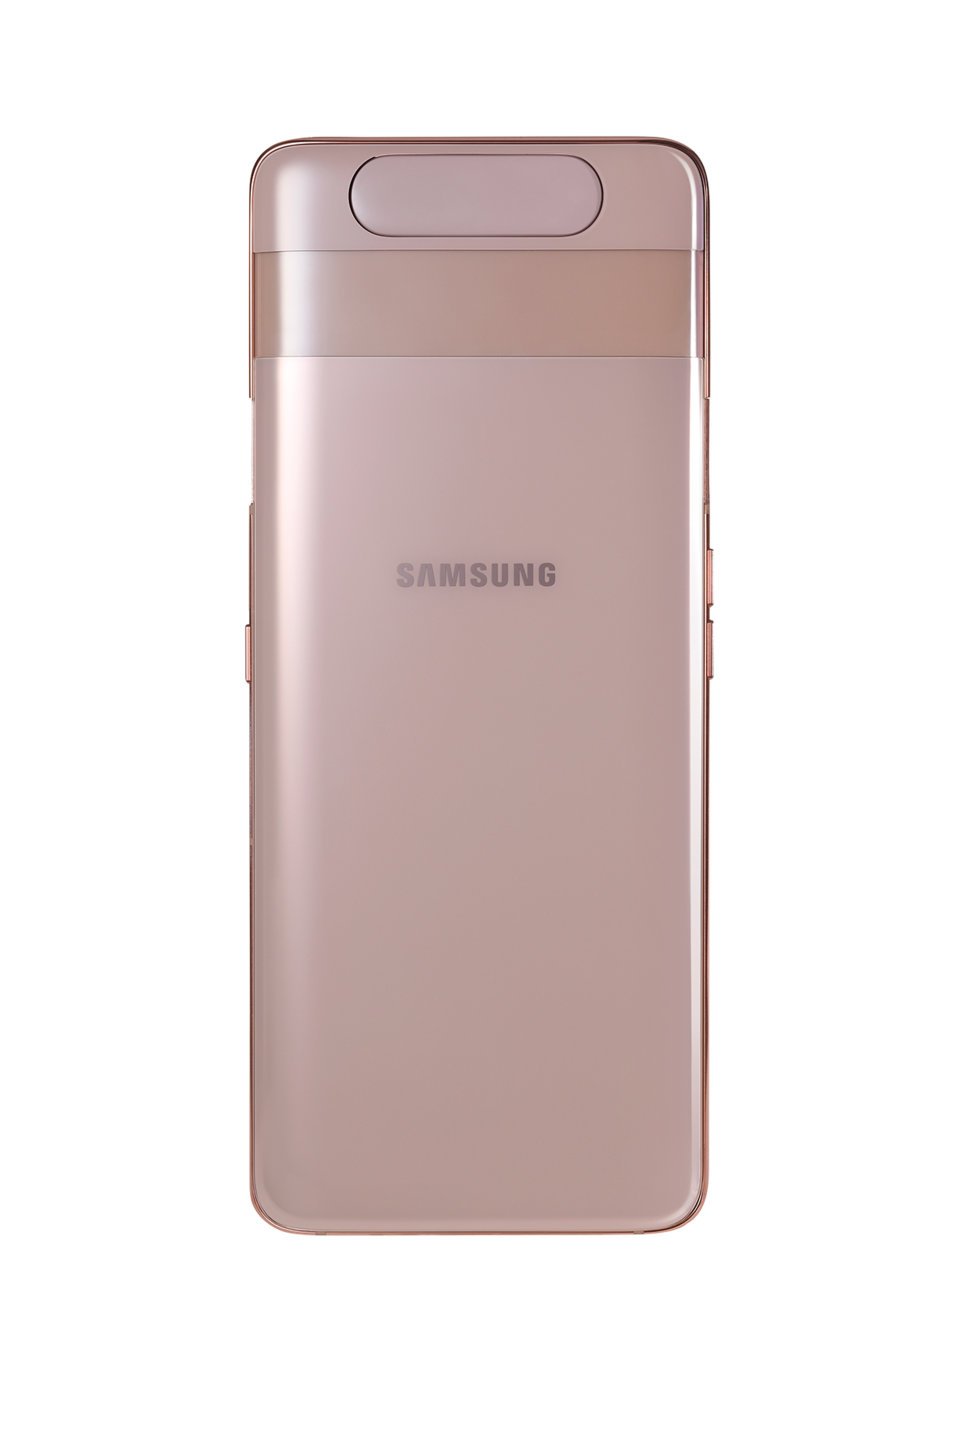 origen Transparente fusible Samsung Galaxy A80: Precio, características y donde comprar